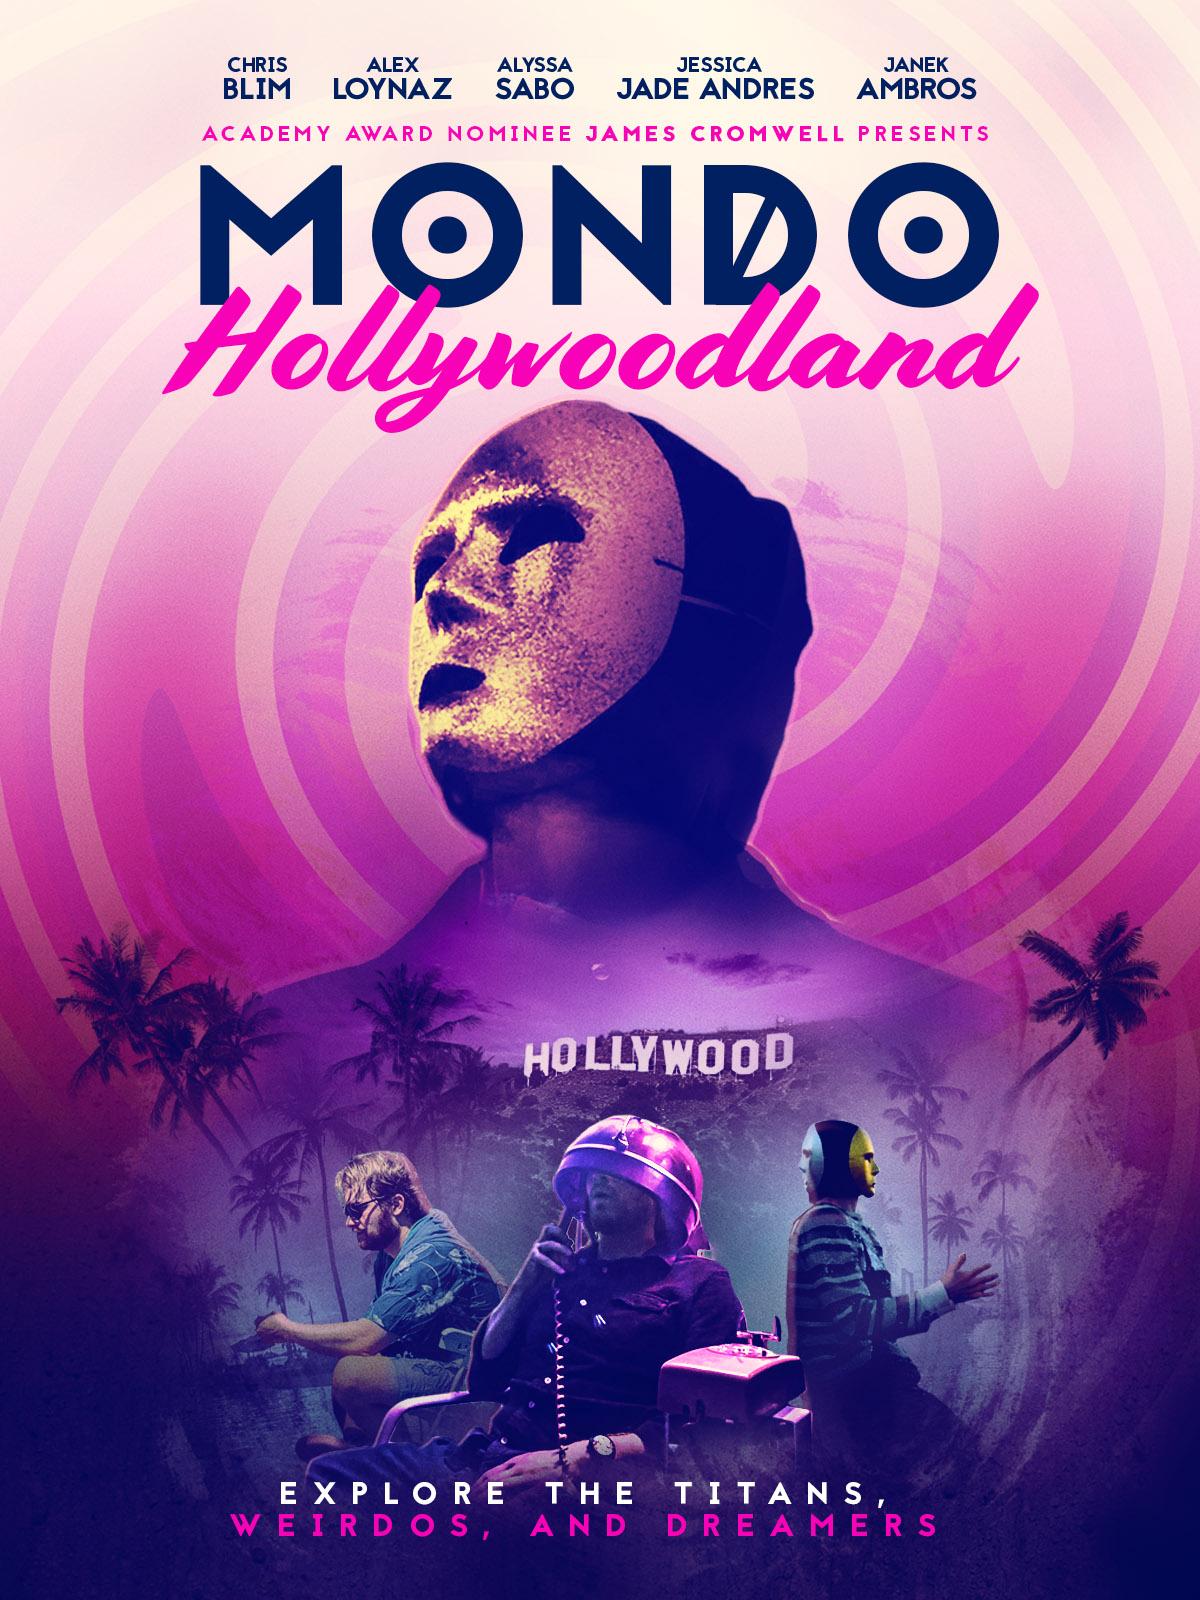 بوستر Mondo Hollywoodland